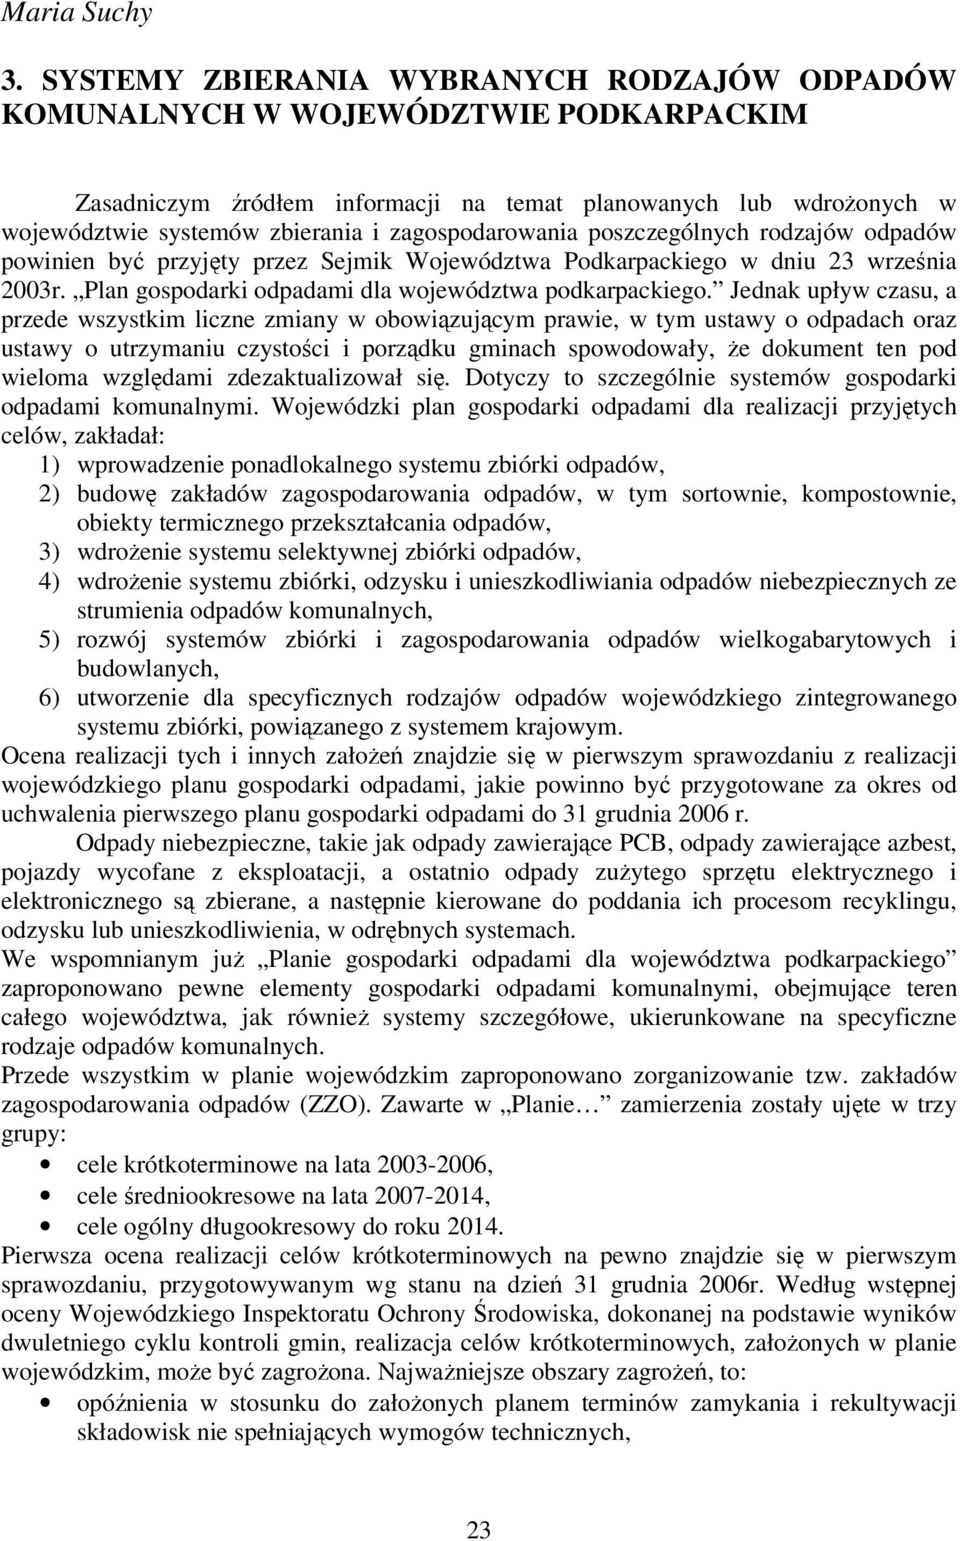 zagospodarowania poszczególnych rodzajów odpadów powinien być przyjęty przez Sejmik Województwa Podkarpackiego w dniu 23 września 2003r. Plan gospodarki odpadami dla województwa podkarpackiego.